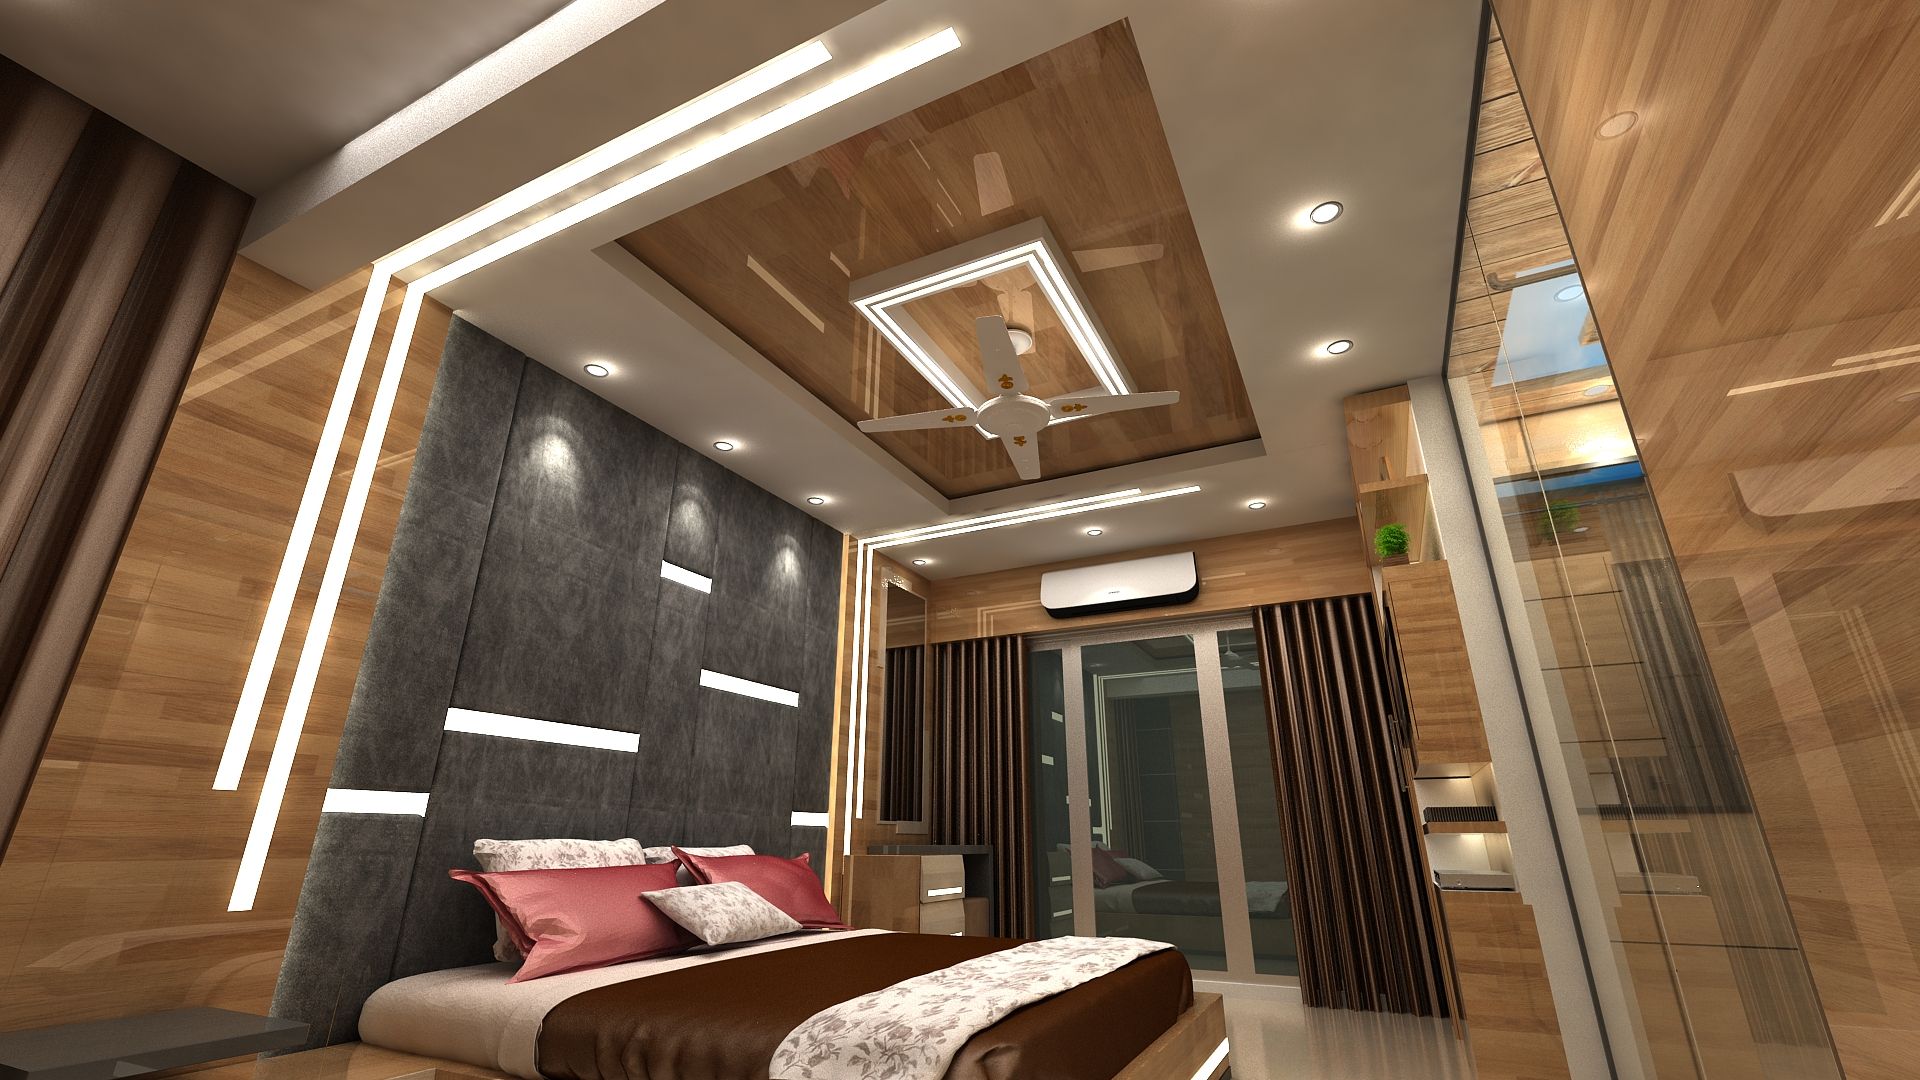 Bedroom Idea, Clickhomz Clickhomz Спальня в стиле модерн